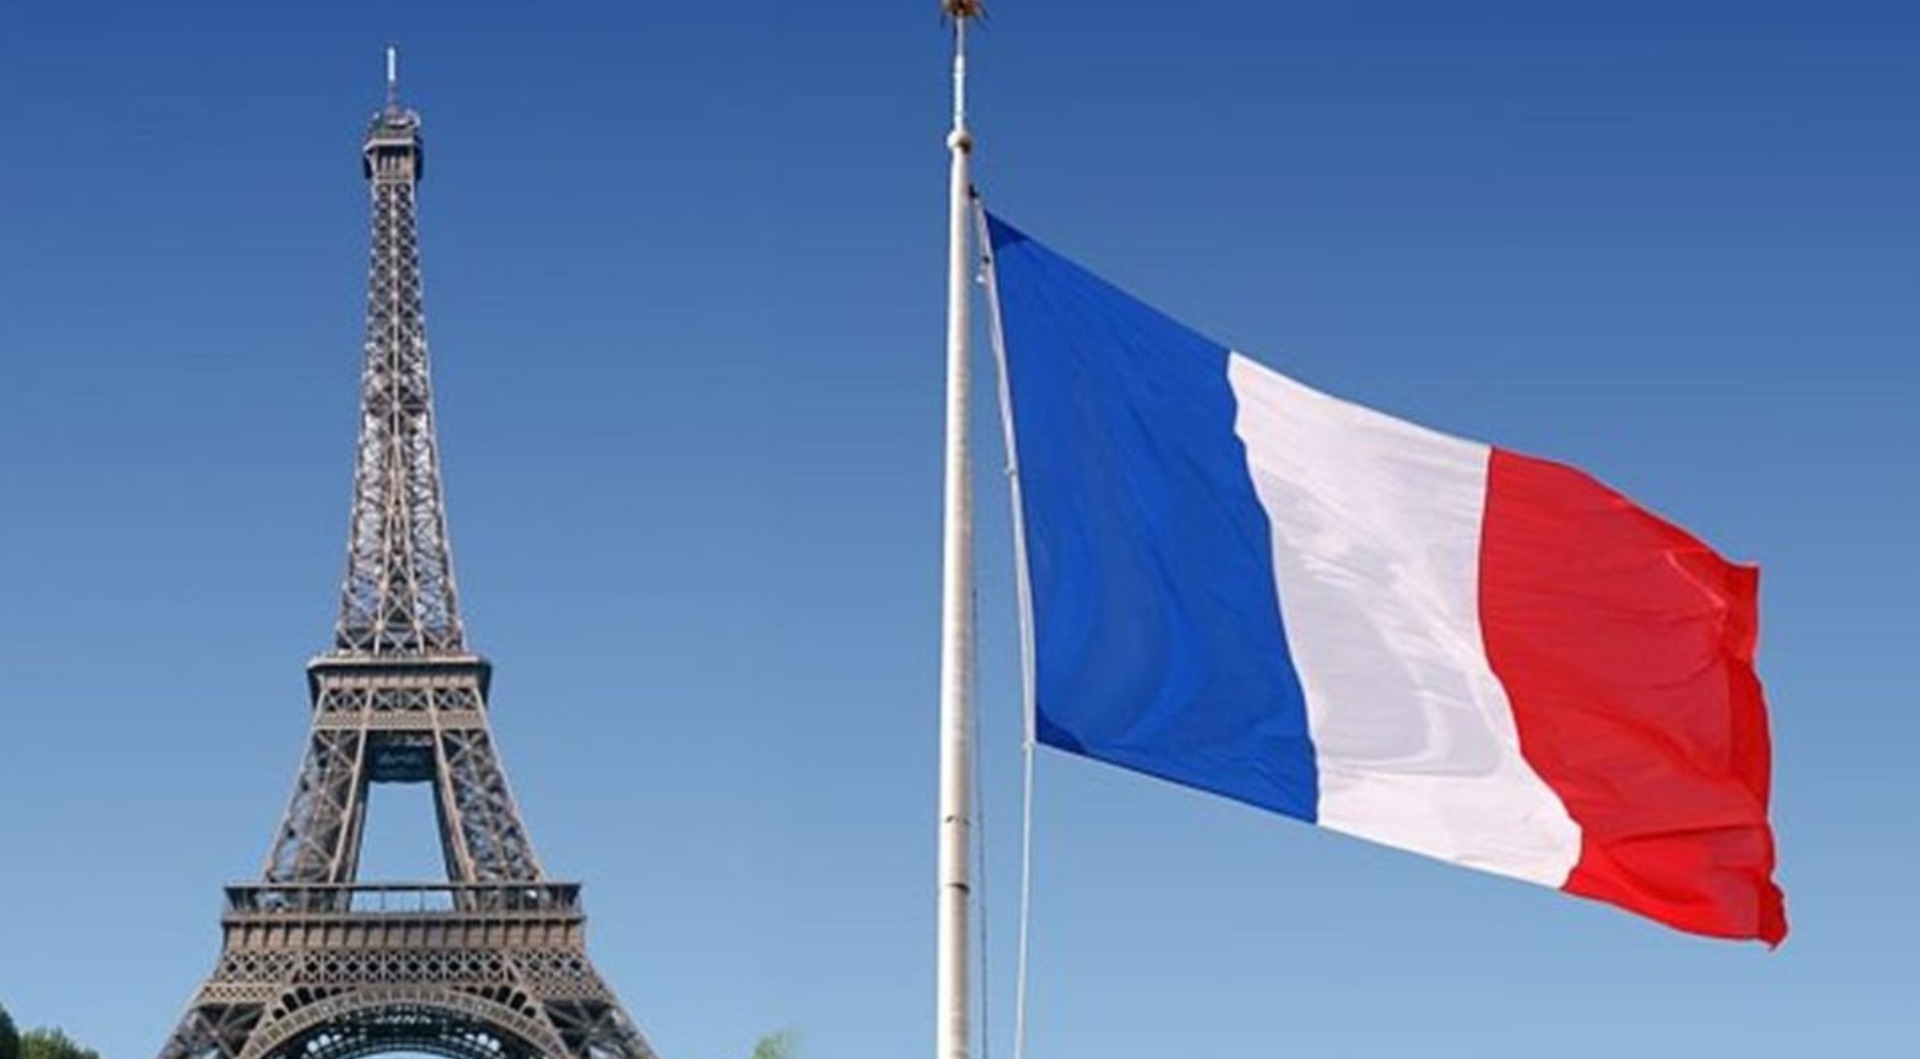 Франция ис. Флаг Парижа Франции. Эйфель башня с флагом. Радиогазета Франции Франция Франция. Флаг Парижа флаг Парижа.